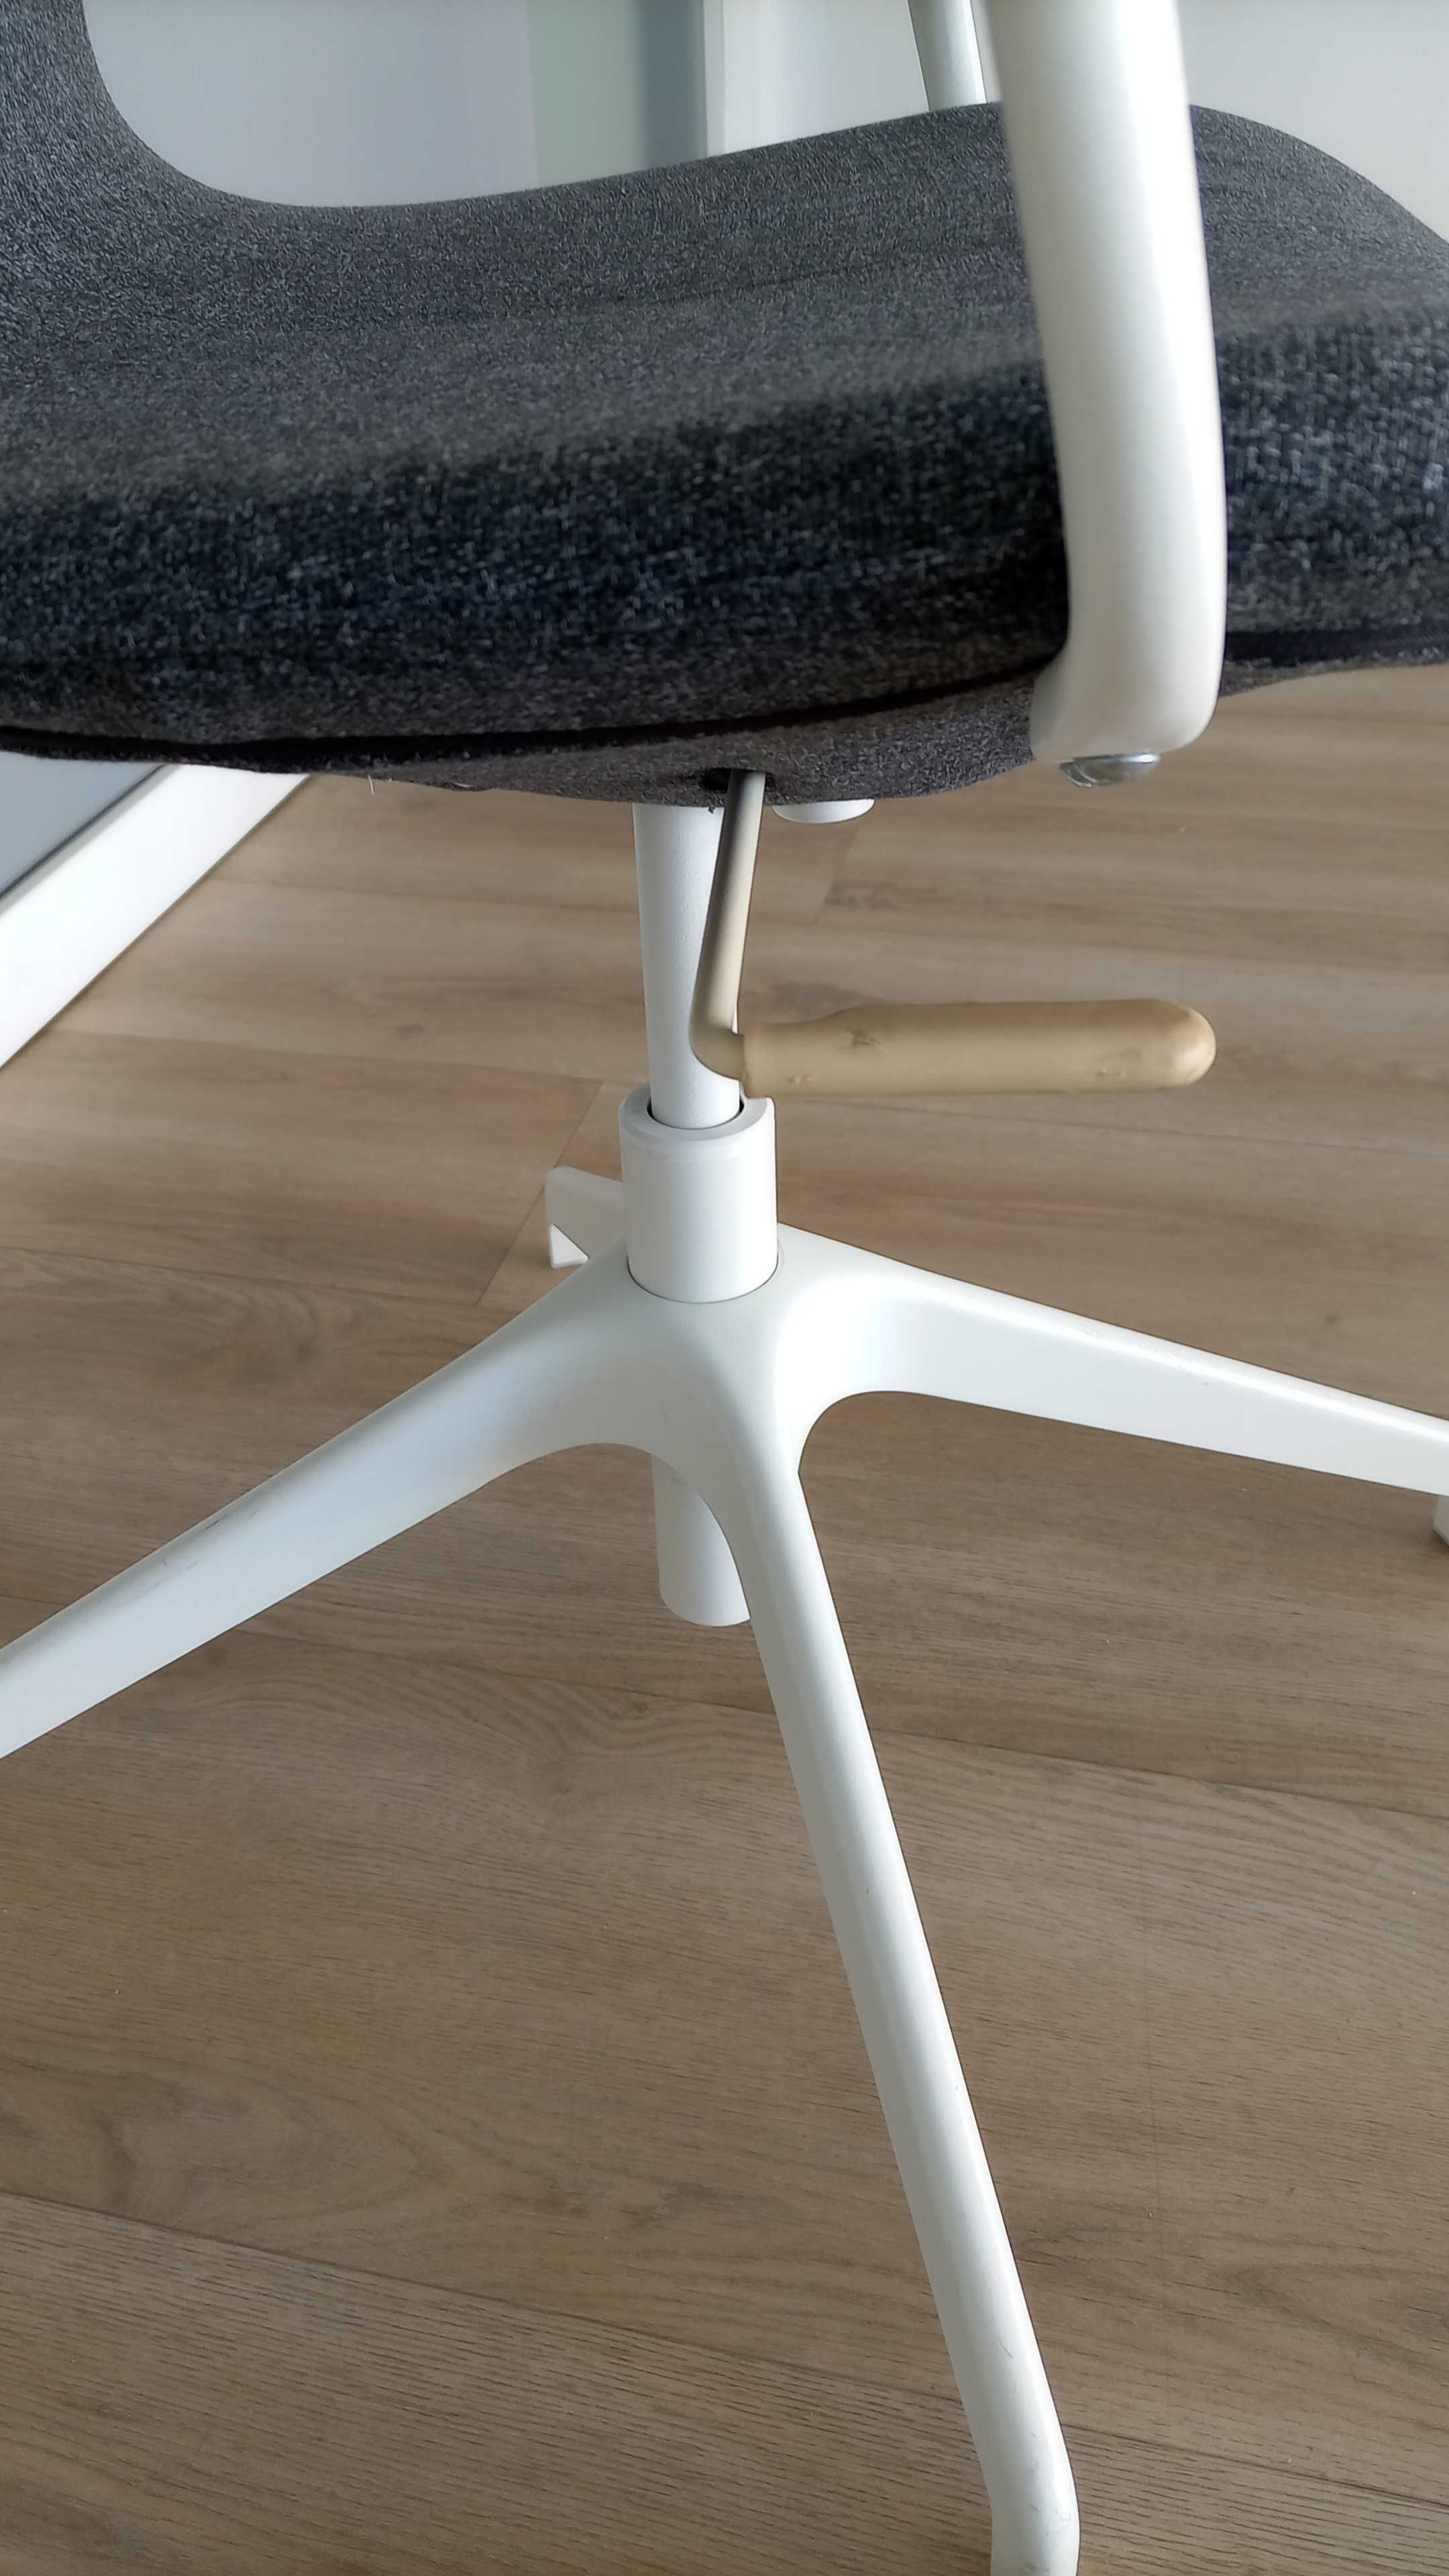 Cadeira Giratória com braços, Modelo Langfjall do IKEA - Ótimo estado